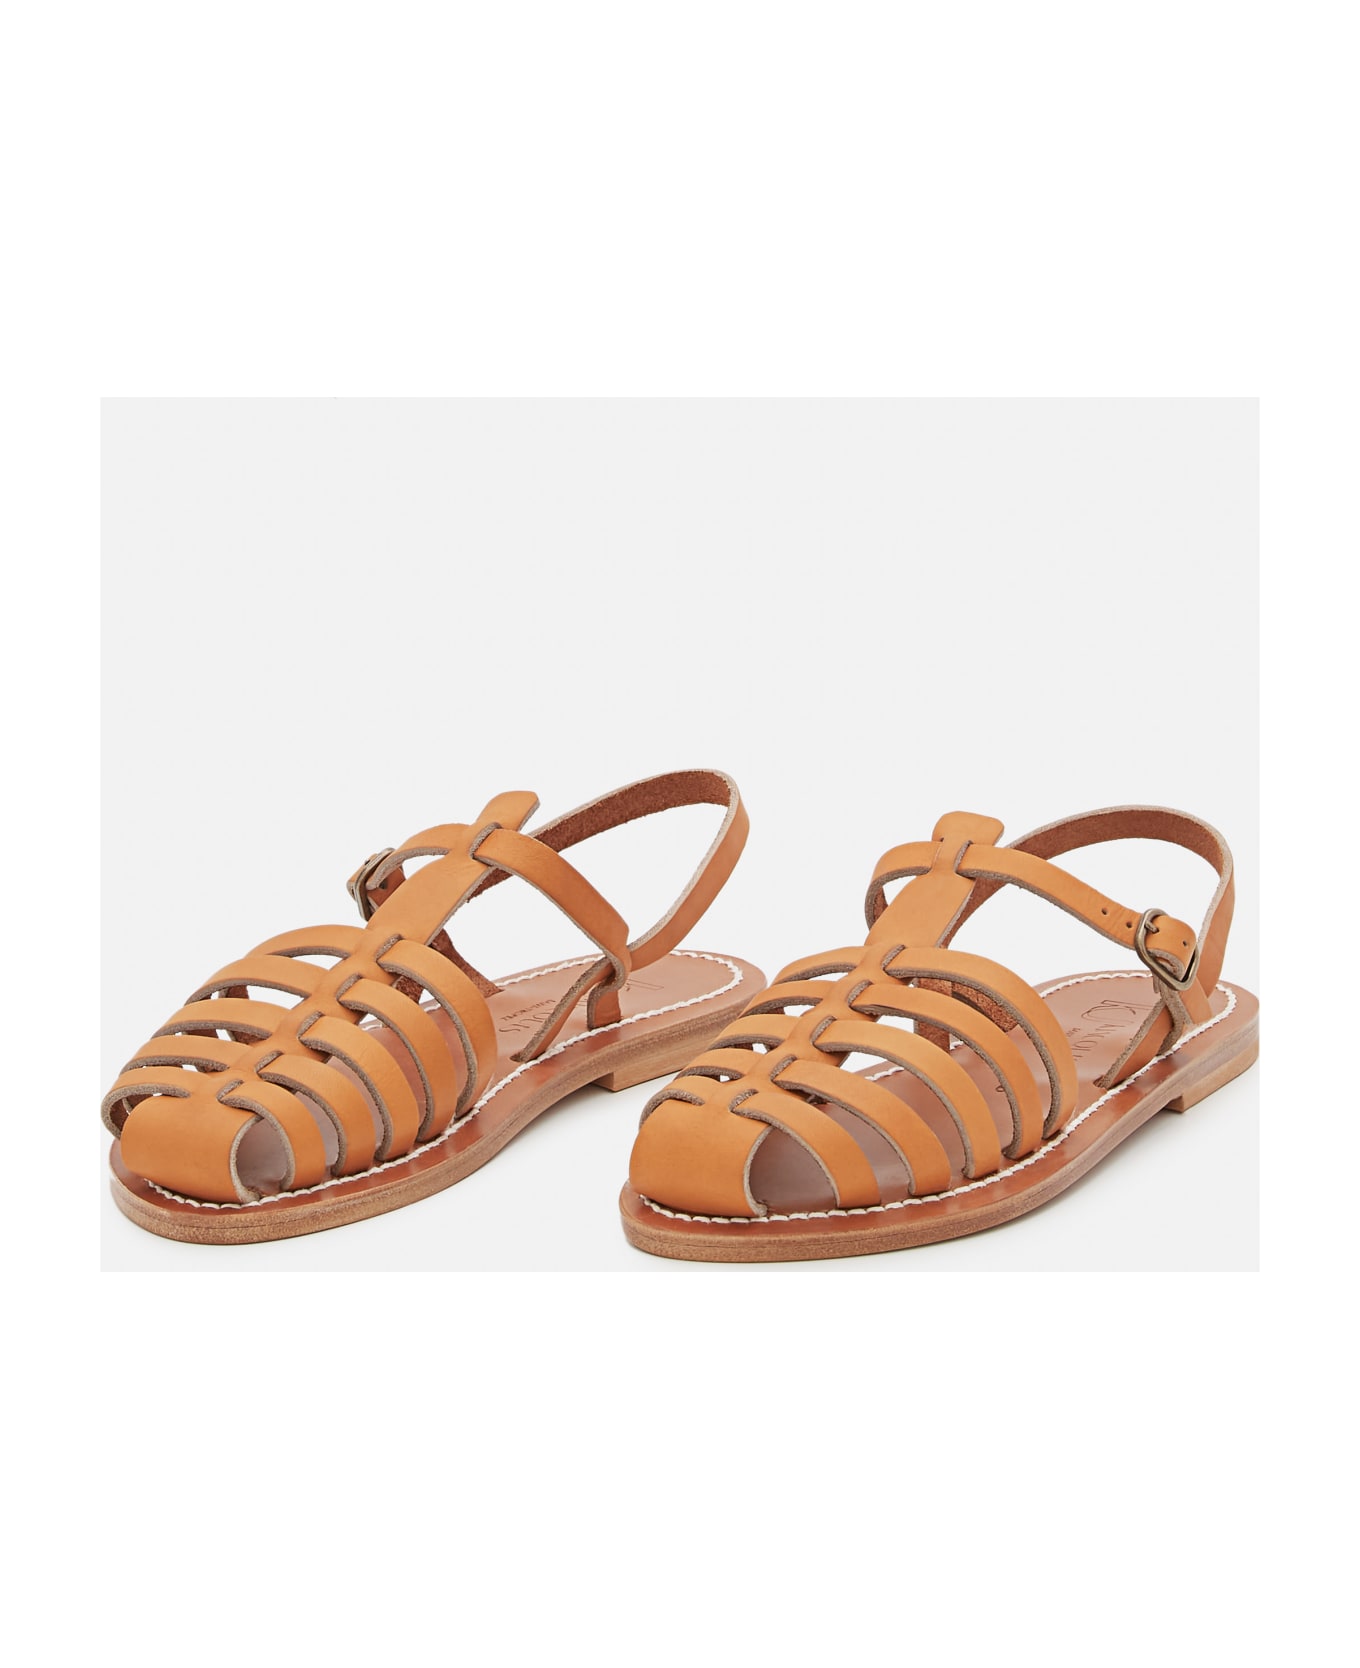 K.Jacques Adrien Leather Sandals - Beige